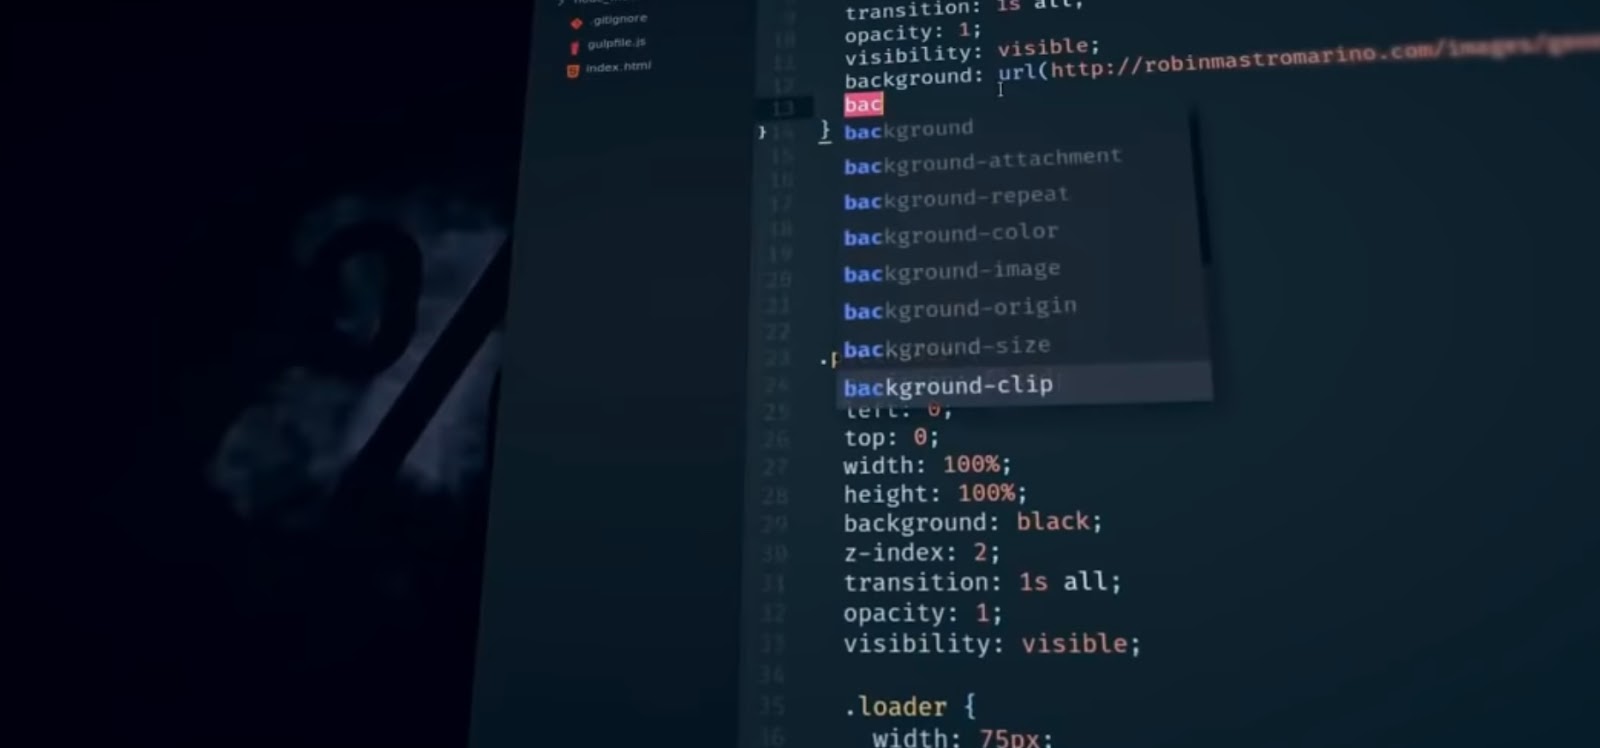 CSS programming code